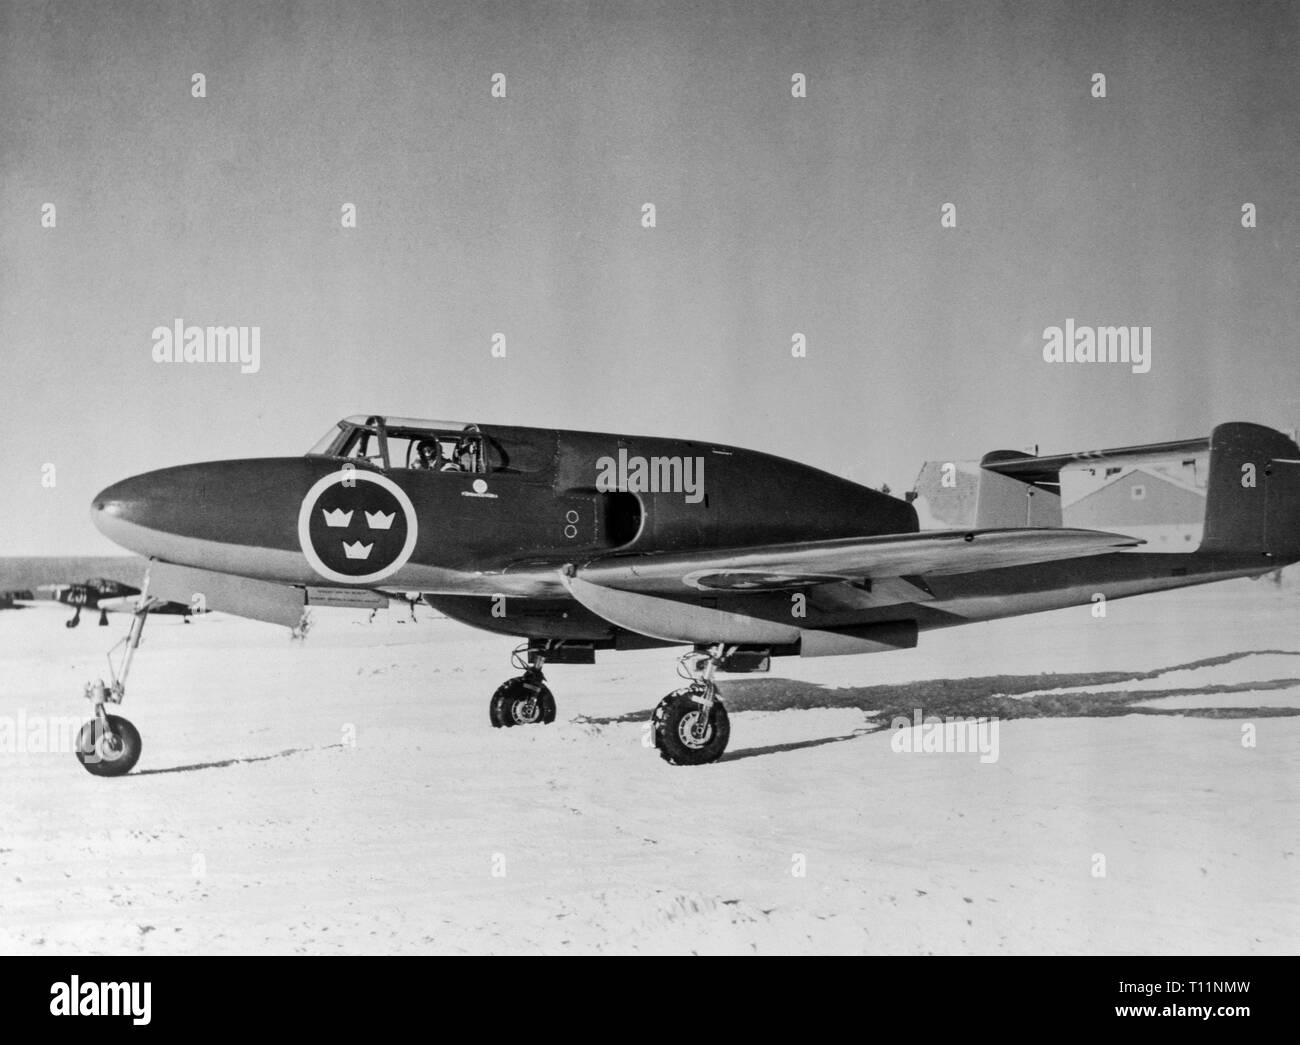 La Saab 21 est un avion de chasse et d'attaque. Il vole pour la première fois en 1943 et a servi dans l'Armée de l'air suédoise jusqu'en 1954. Banque D'Images